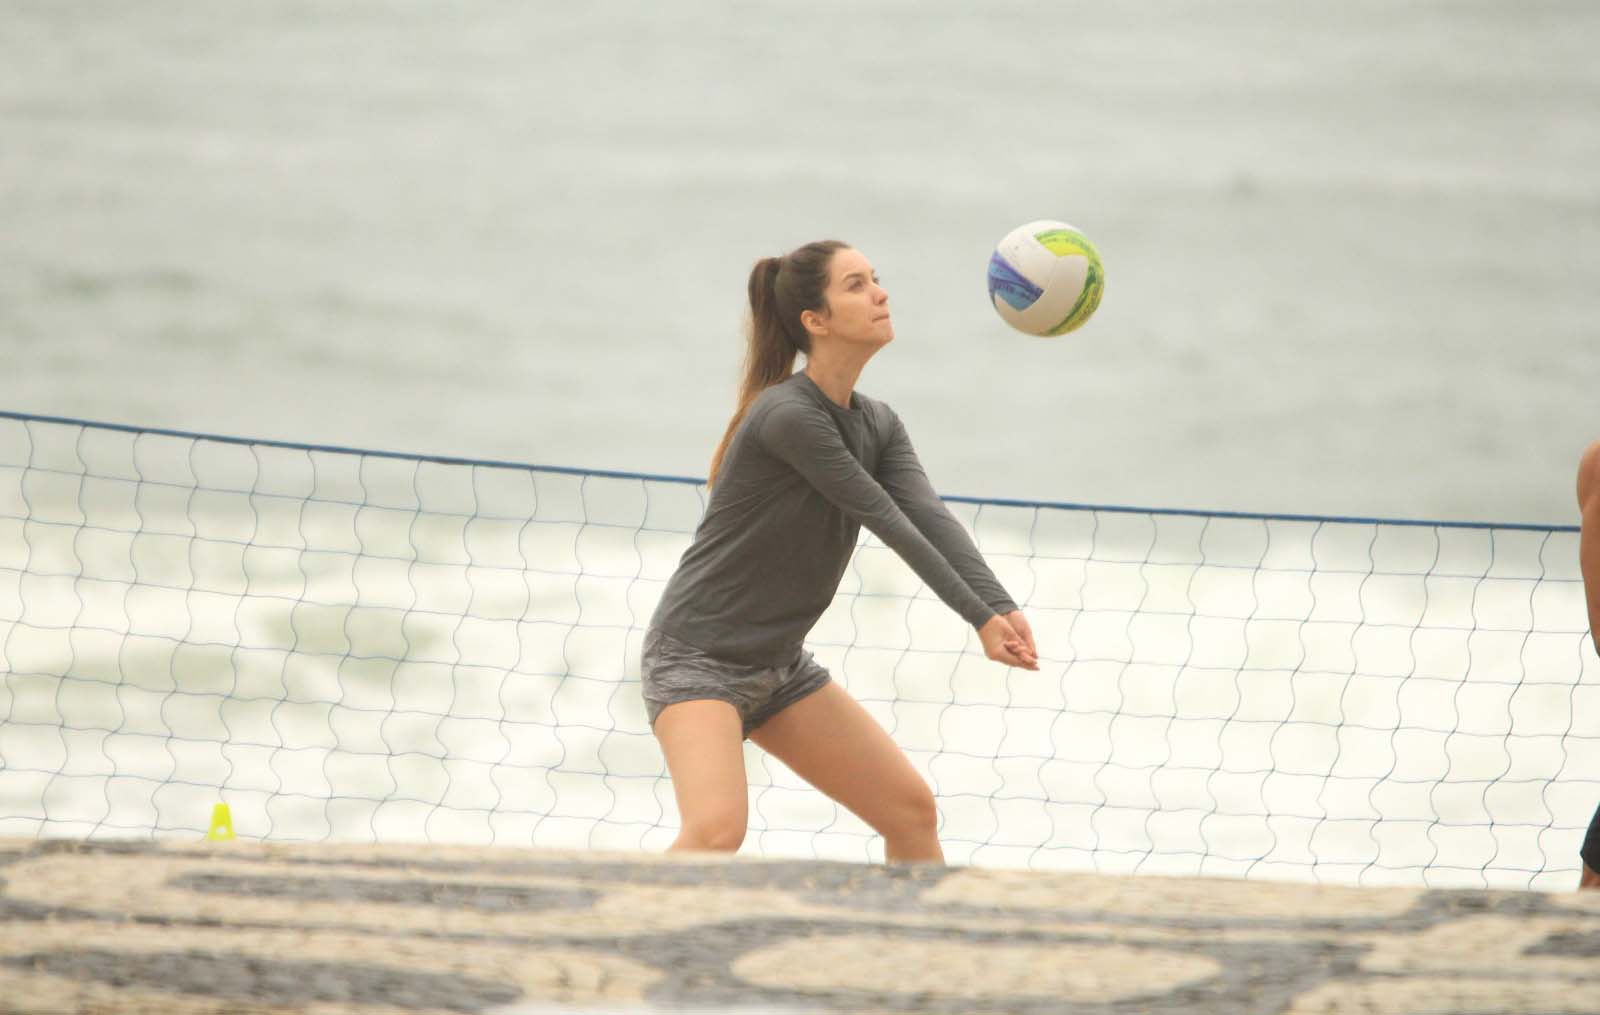 A atriz foi vista praticando vôlei na praia com amigos